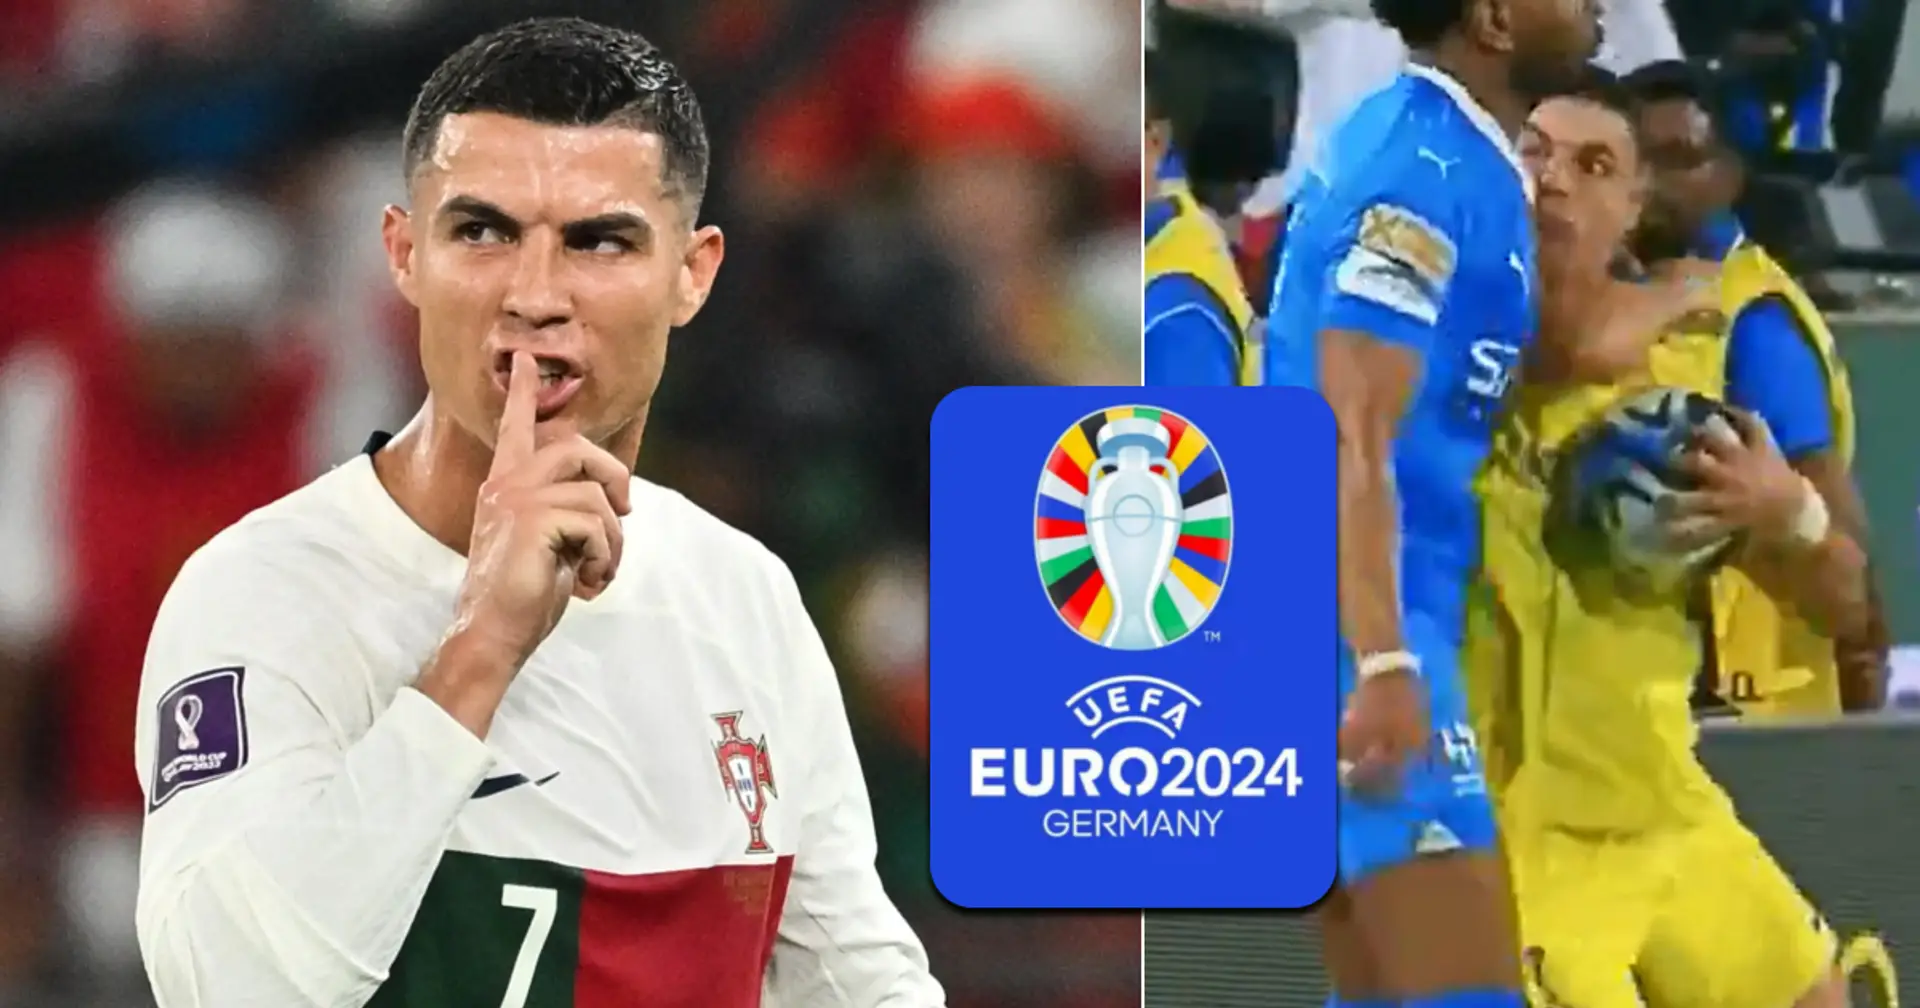 "Uomo tossico, tossico": i tifosi sono dispiaciuti per il Portogallo in vista di Euro 2024 dopo l'ultimo gestaccio di Cristiano Ronaldo